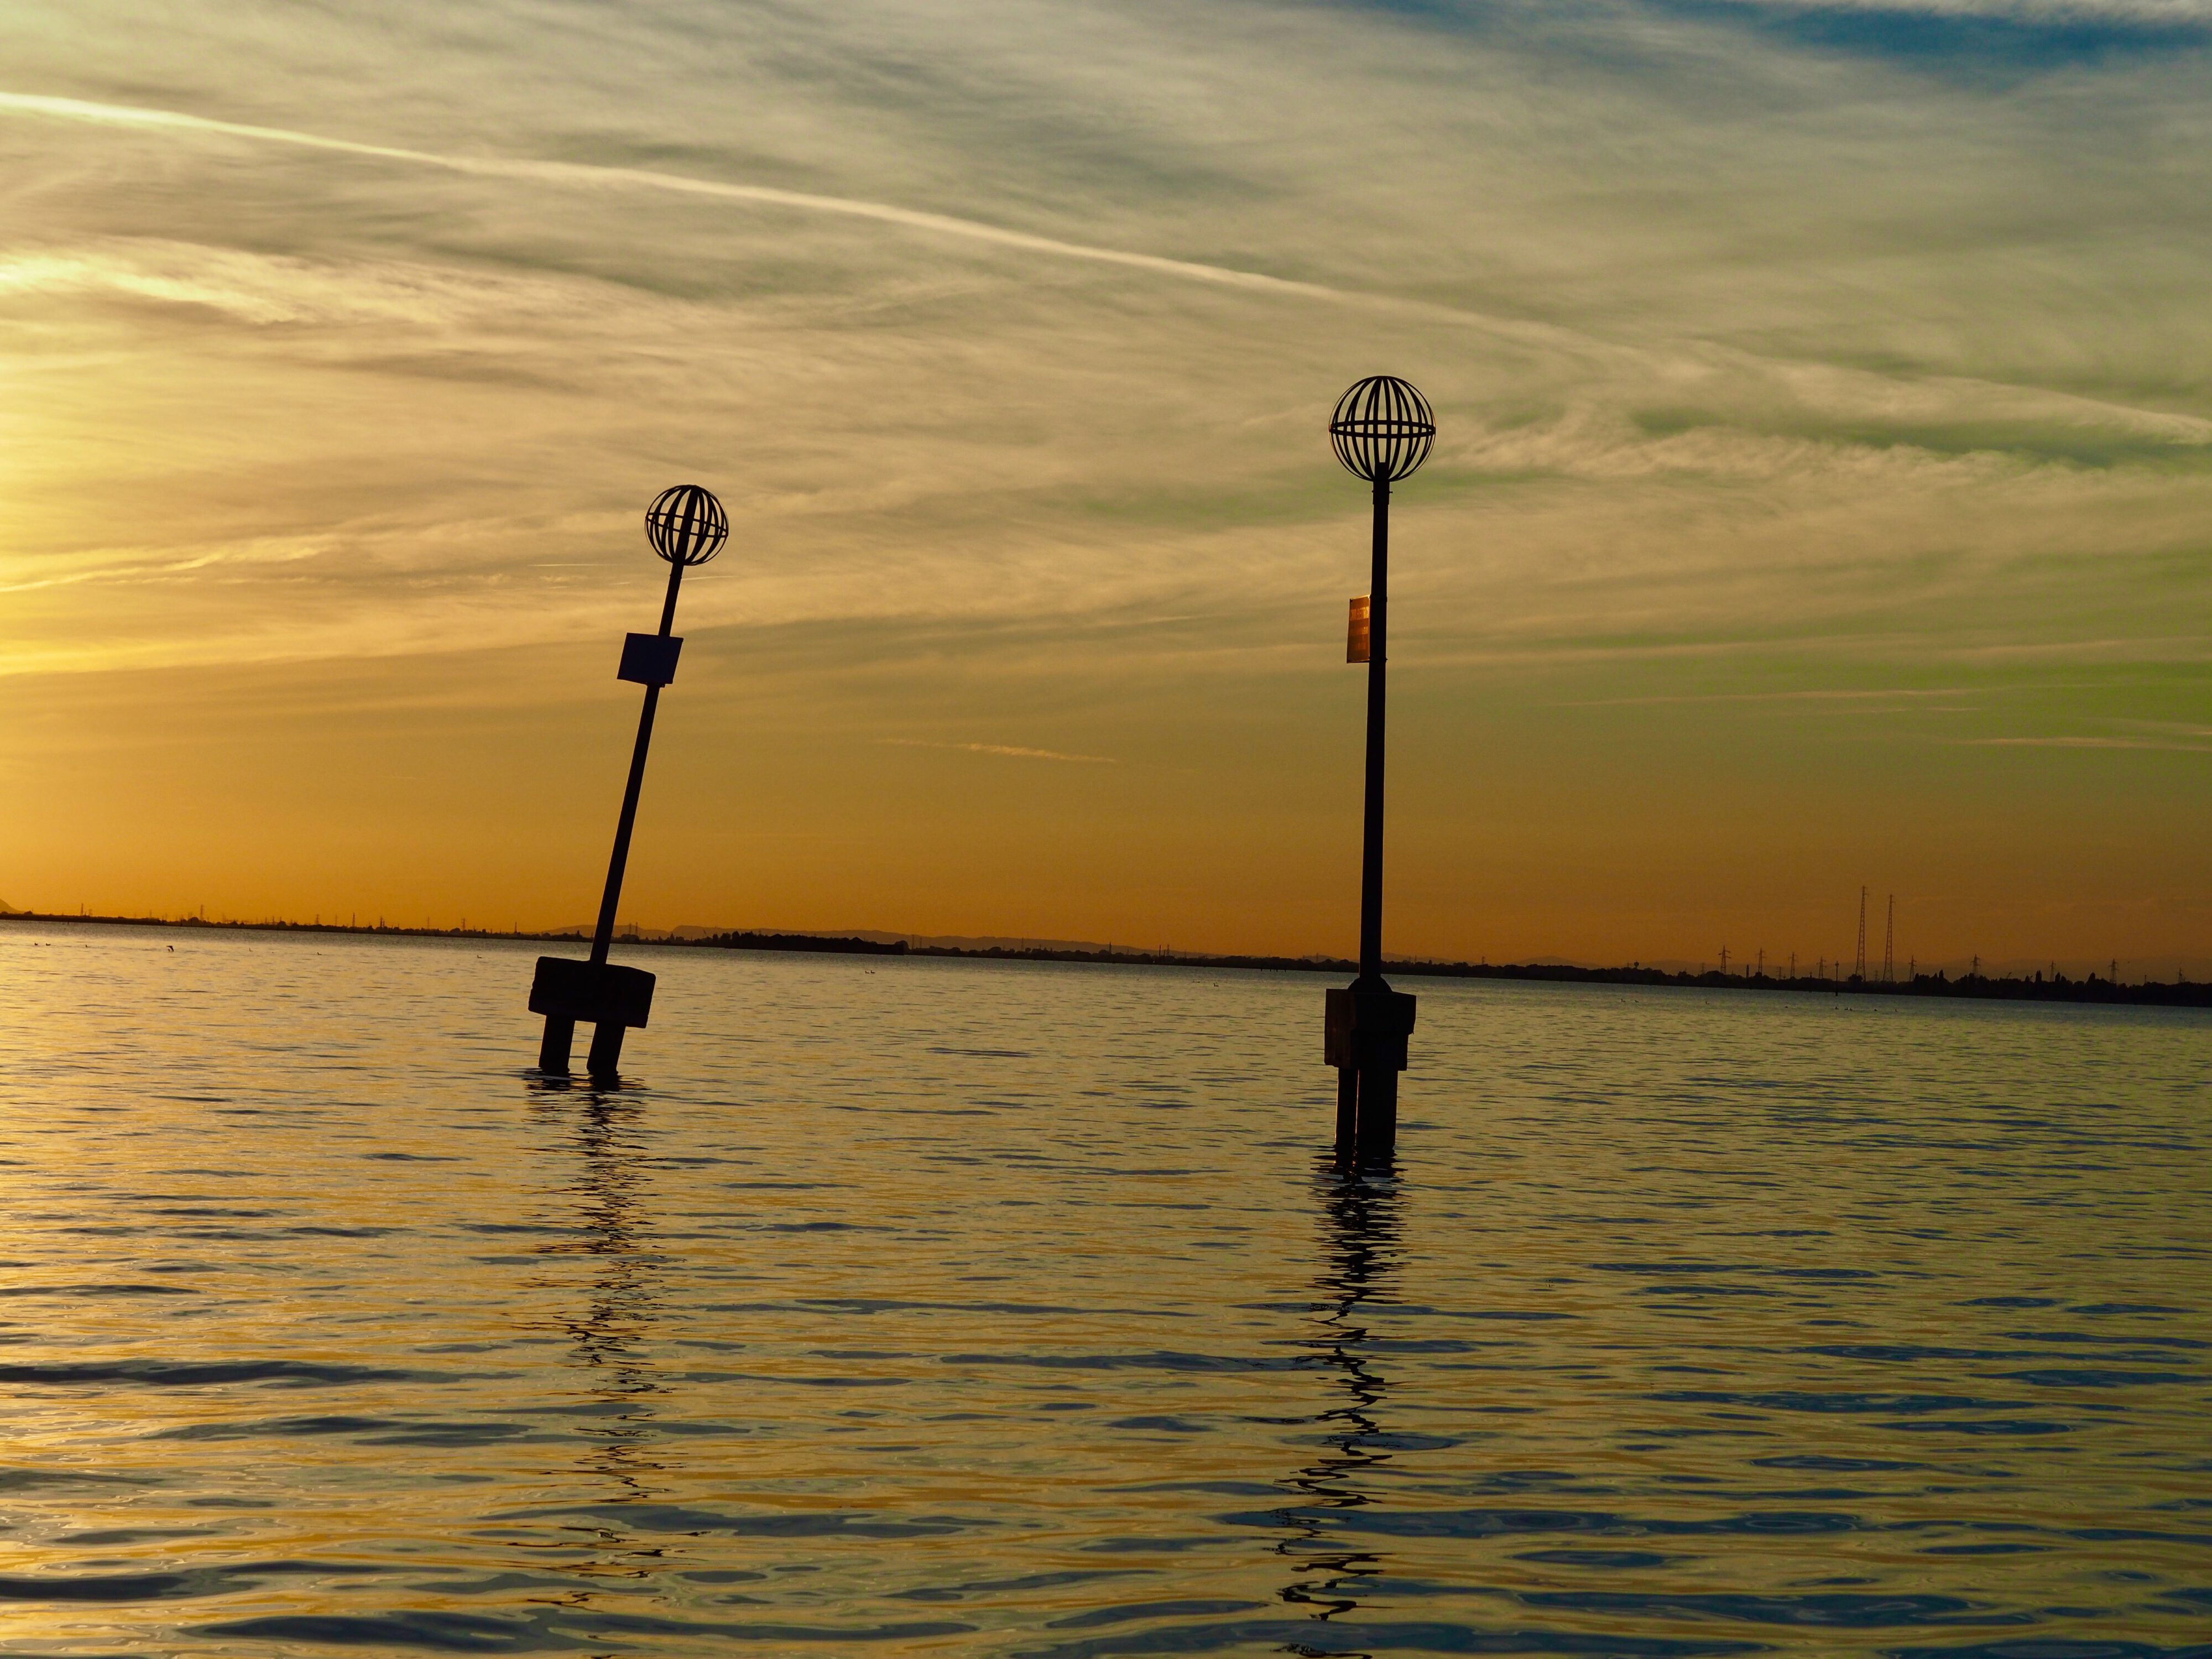 Venice - sunset in the lagoon